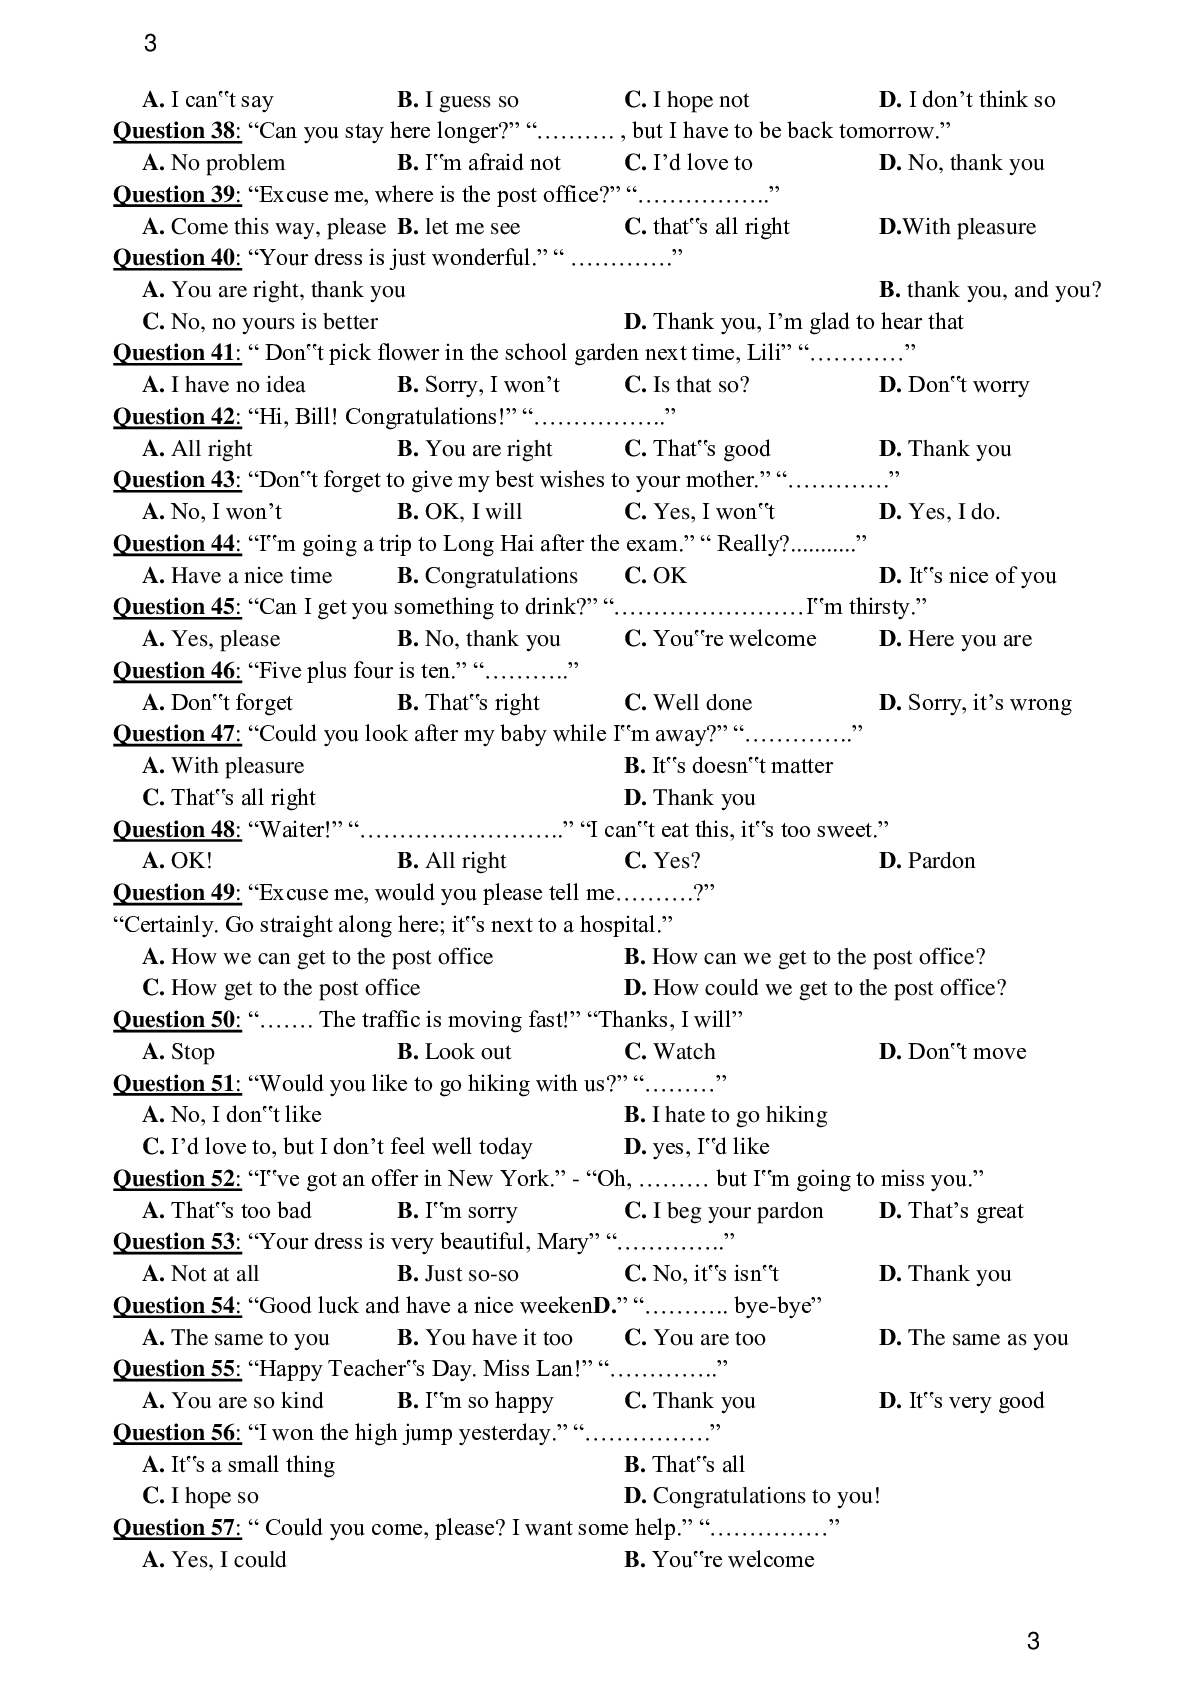 100 câu giao tiếp thường gặp trong đề thi Đại Học môn Tiếng Anh (trang 3)